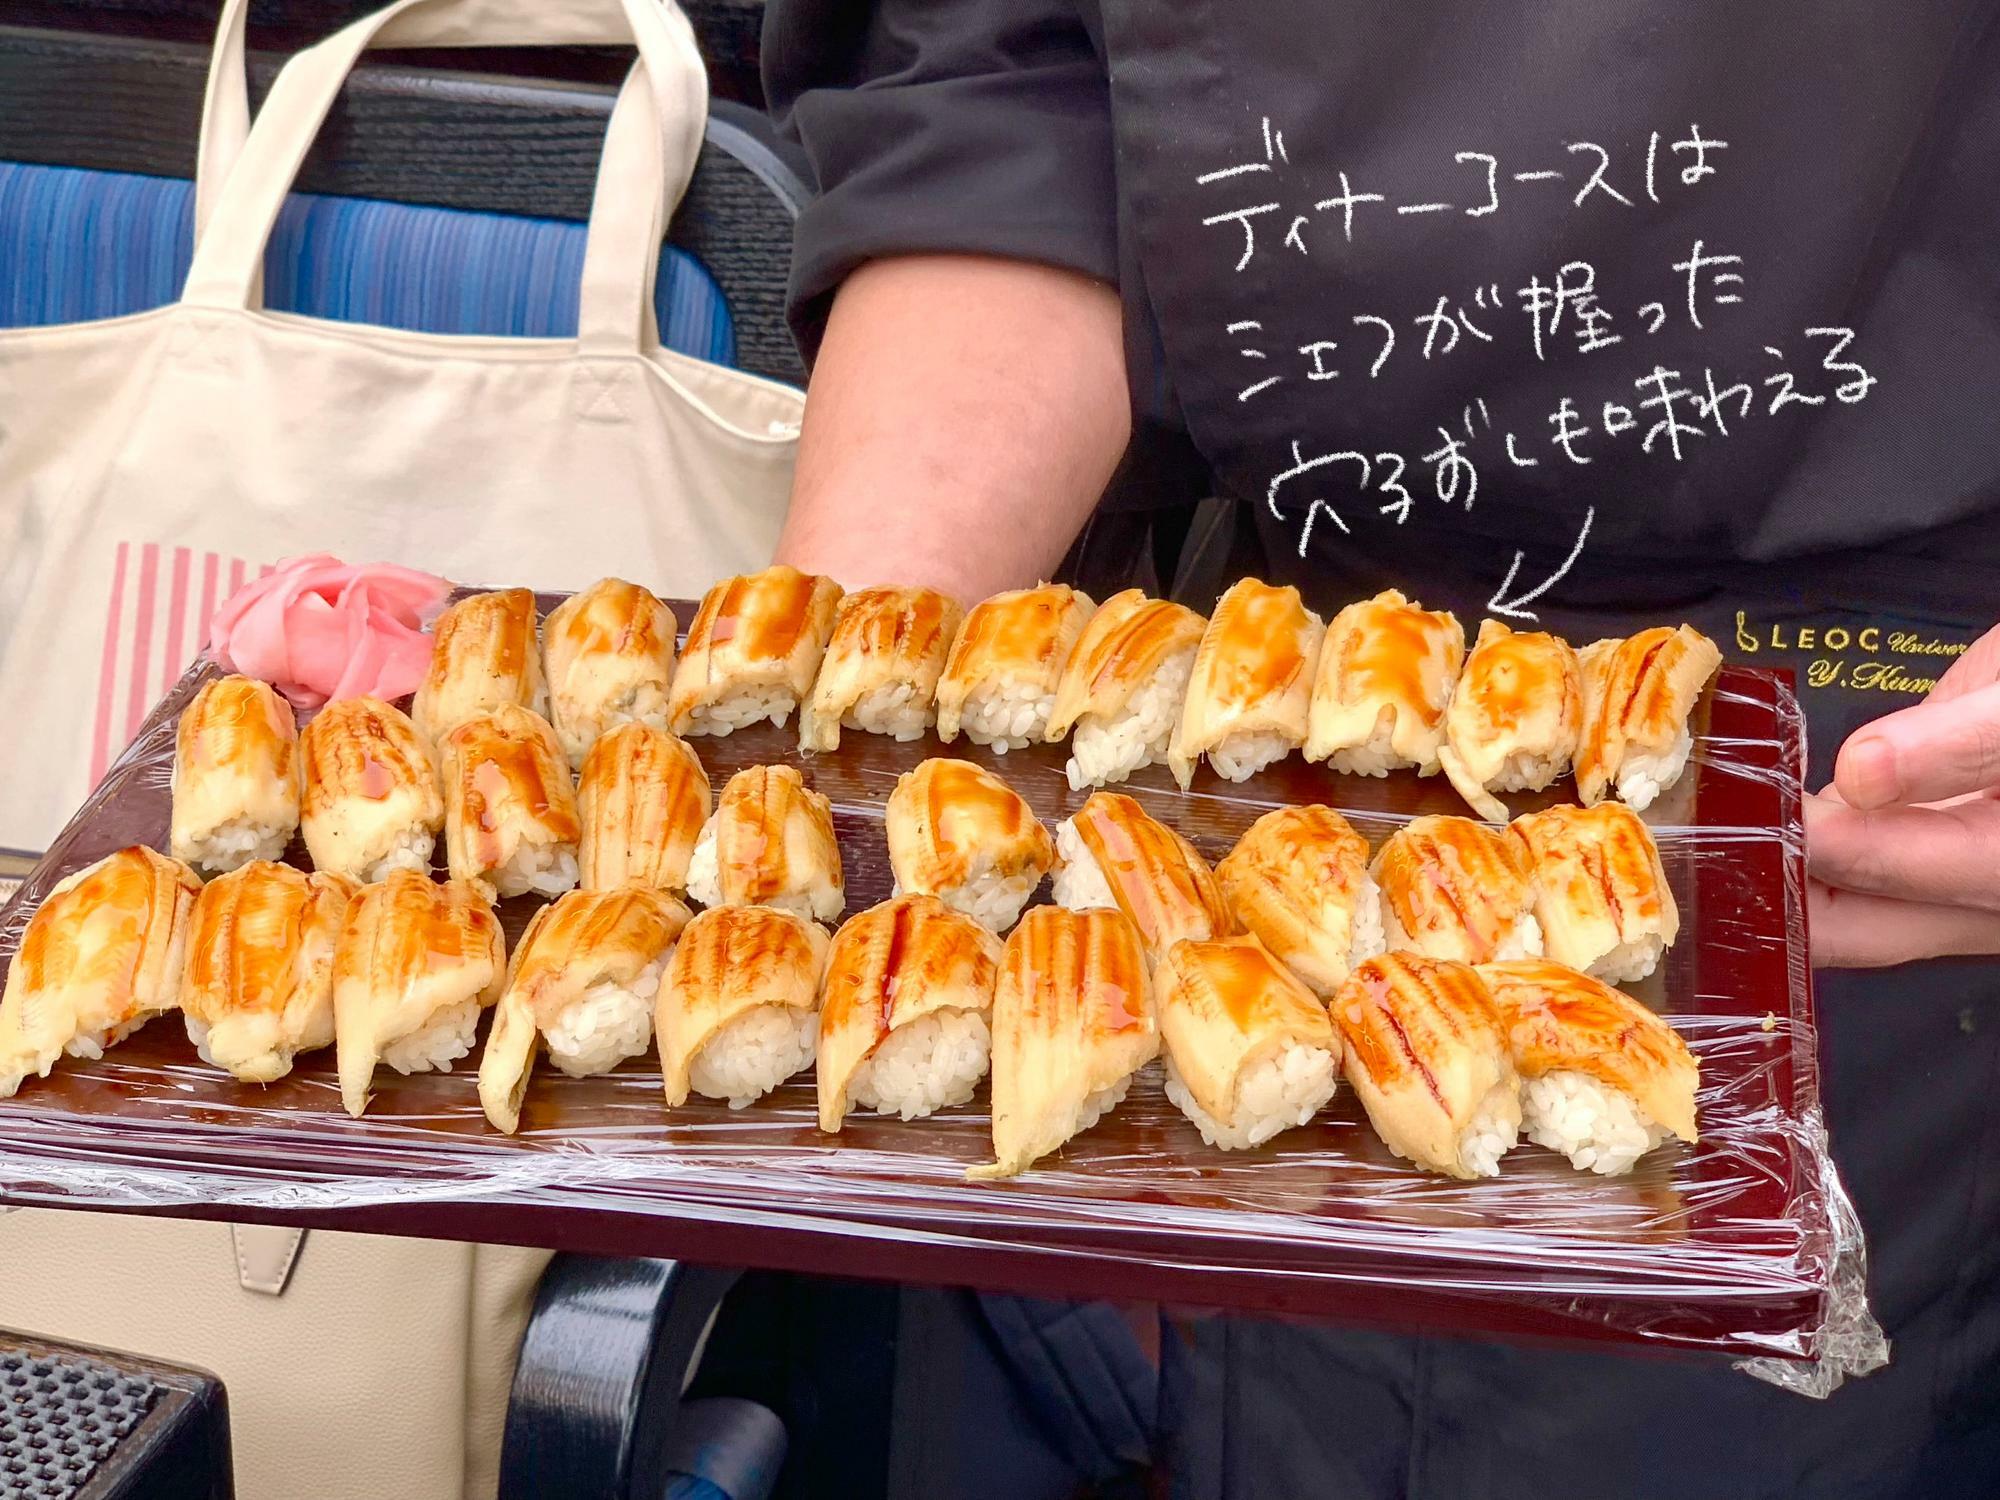 江戸前寿司の定番「穴子寿司」